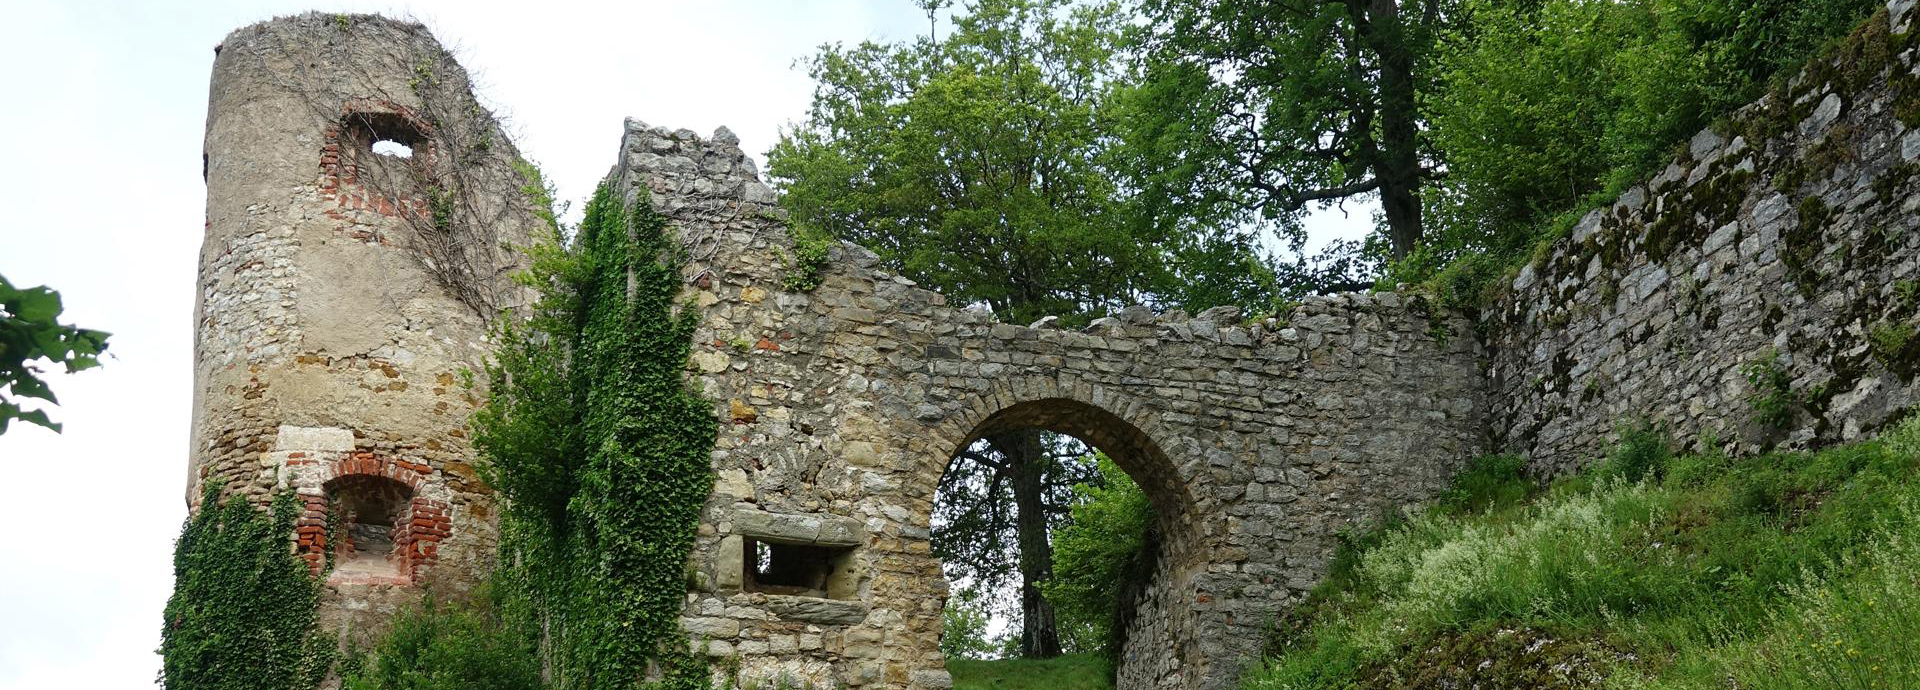 Château de Ferrette im Elsass, ein privilegierter historischer Rahmen